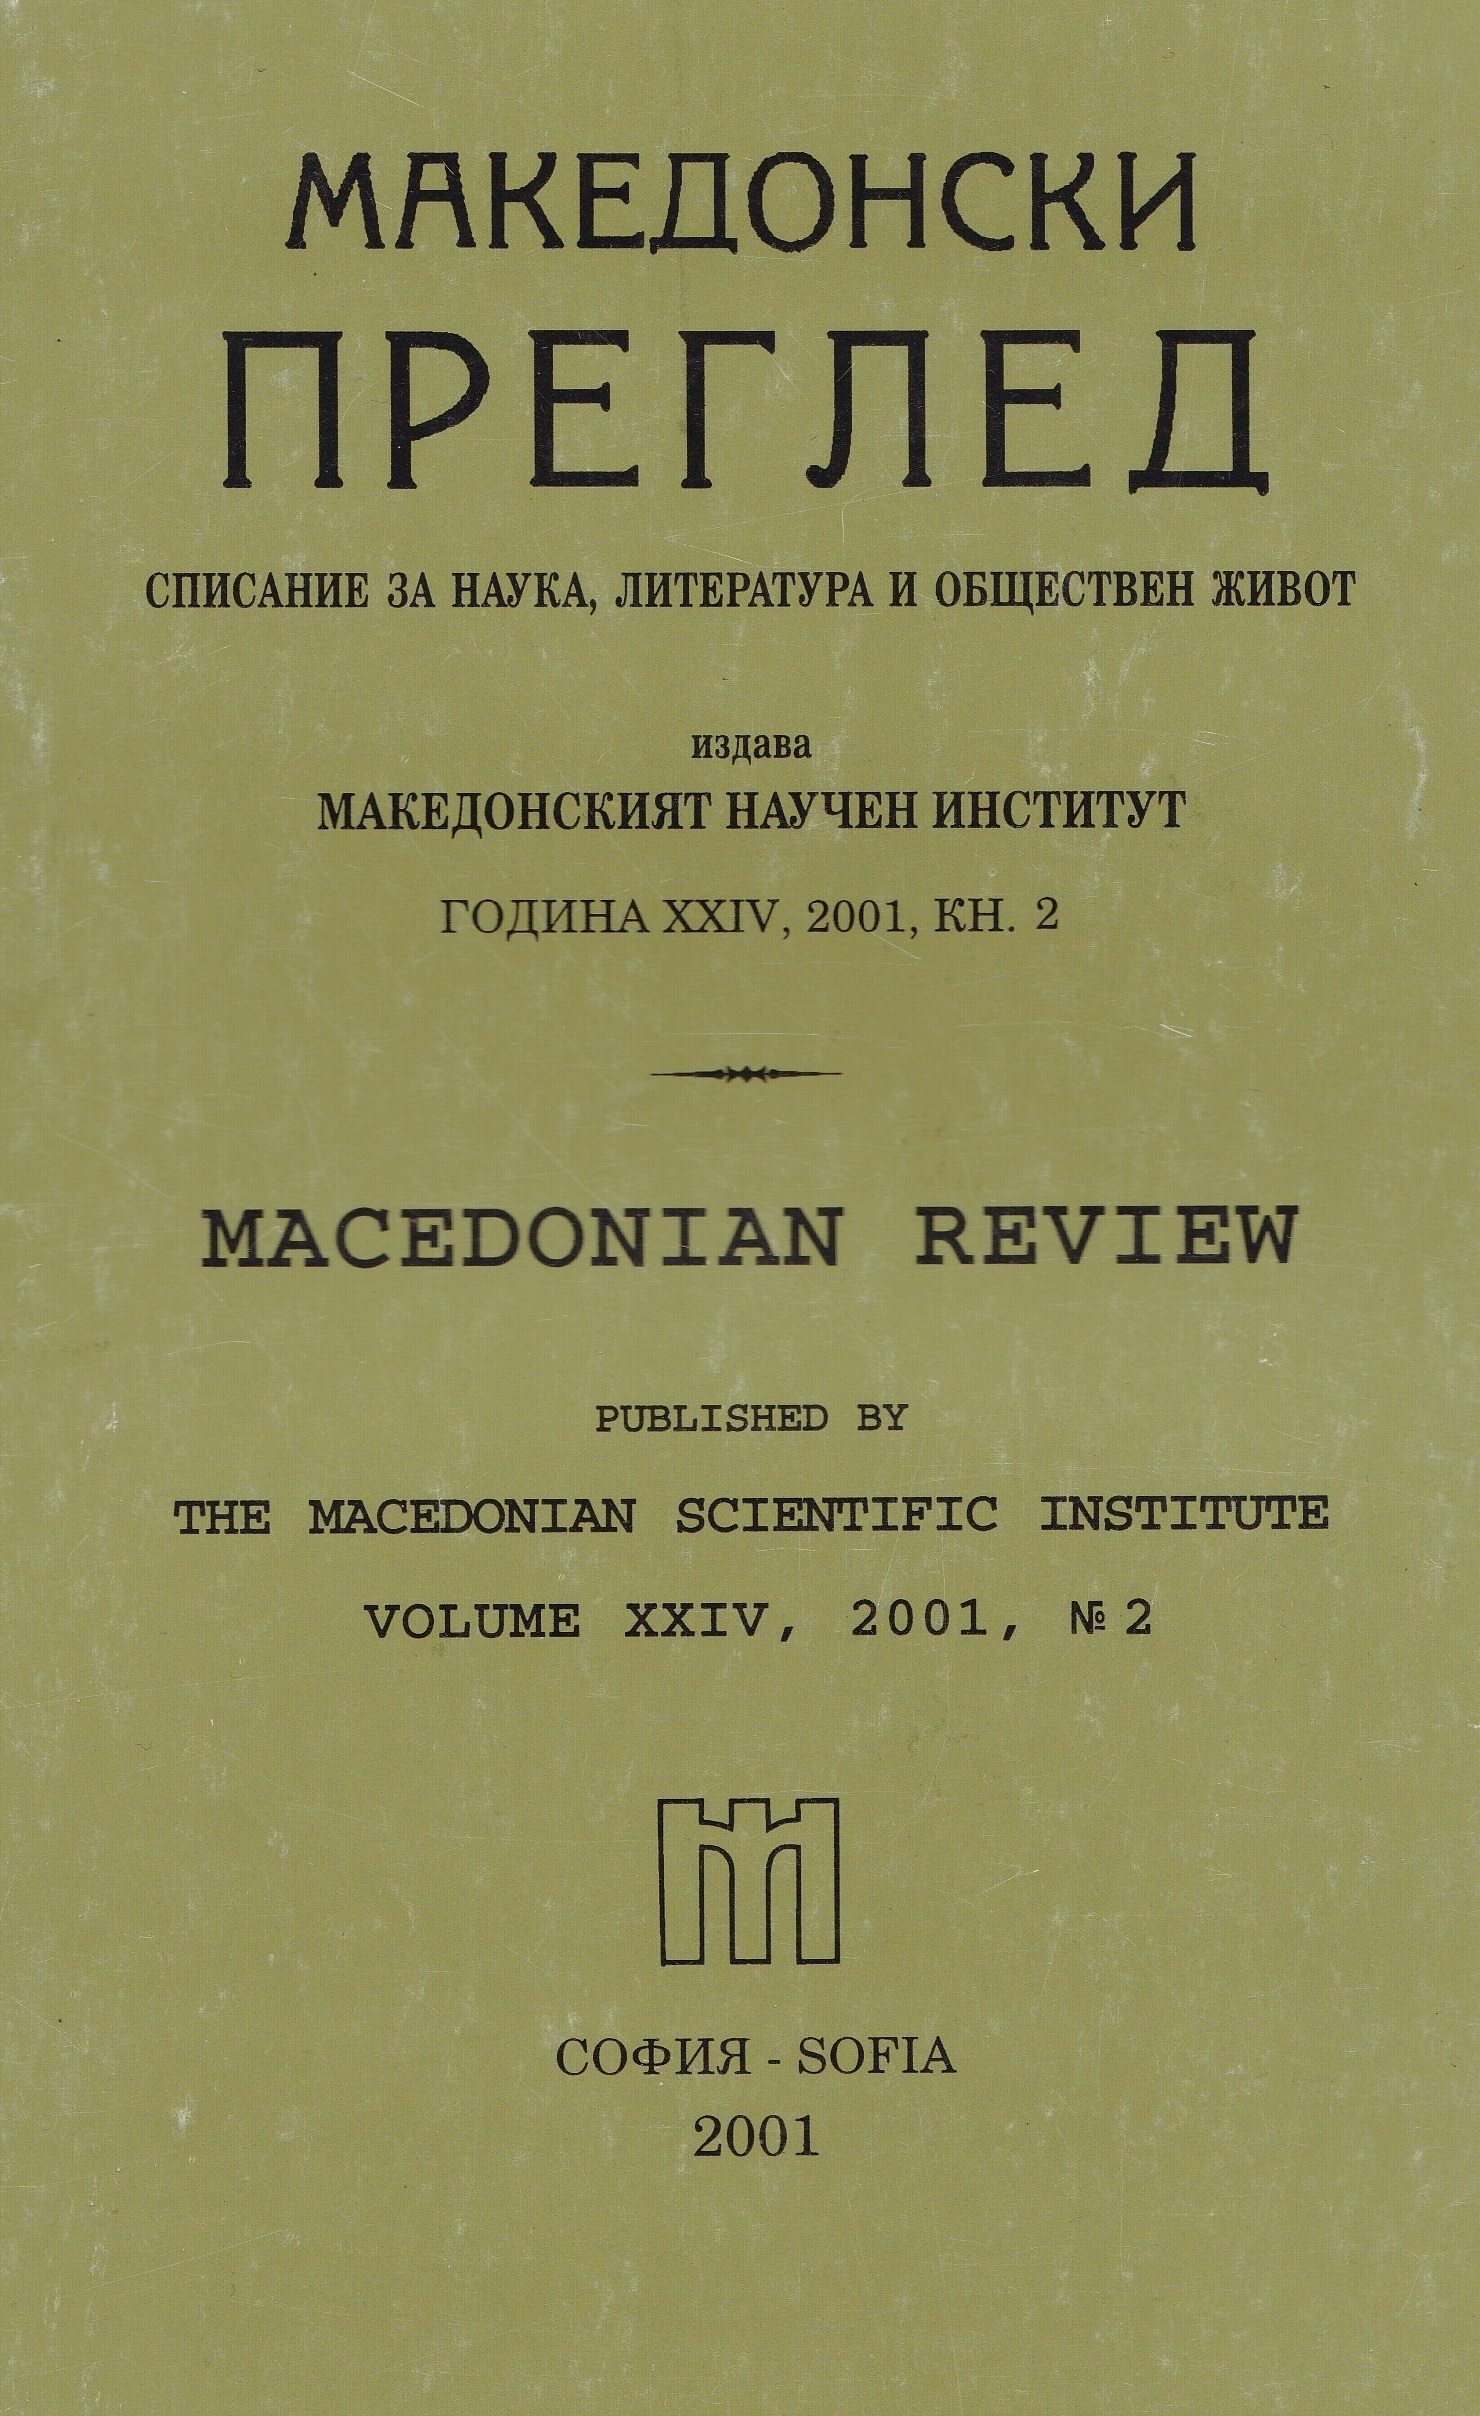 Албанското политическо настъпление и българските национални интереси през ХХ век